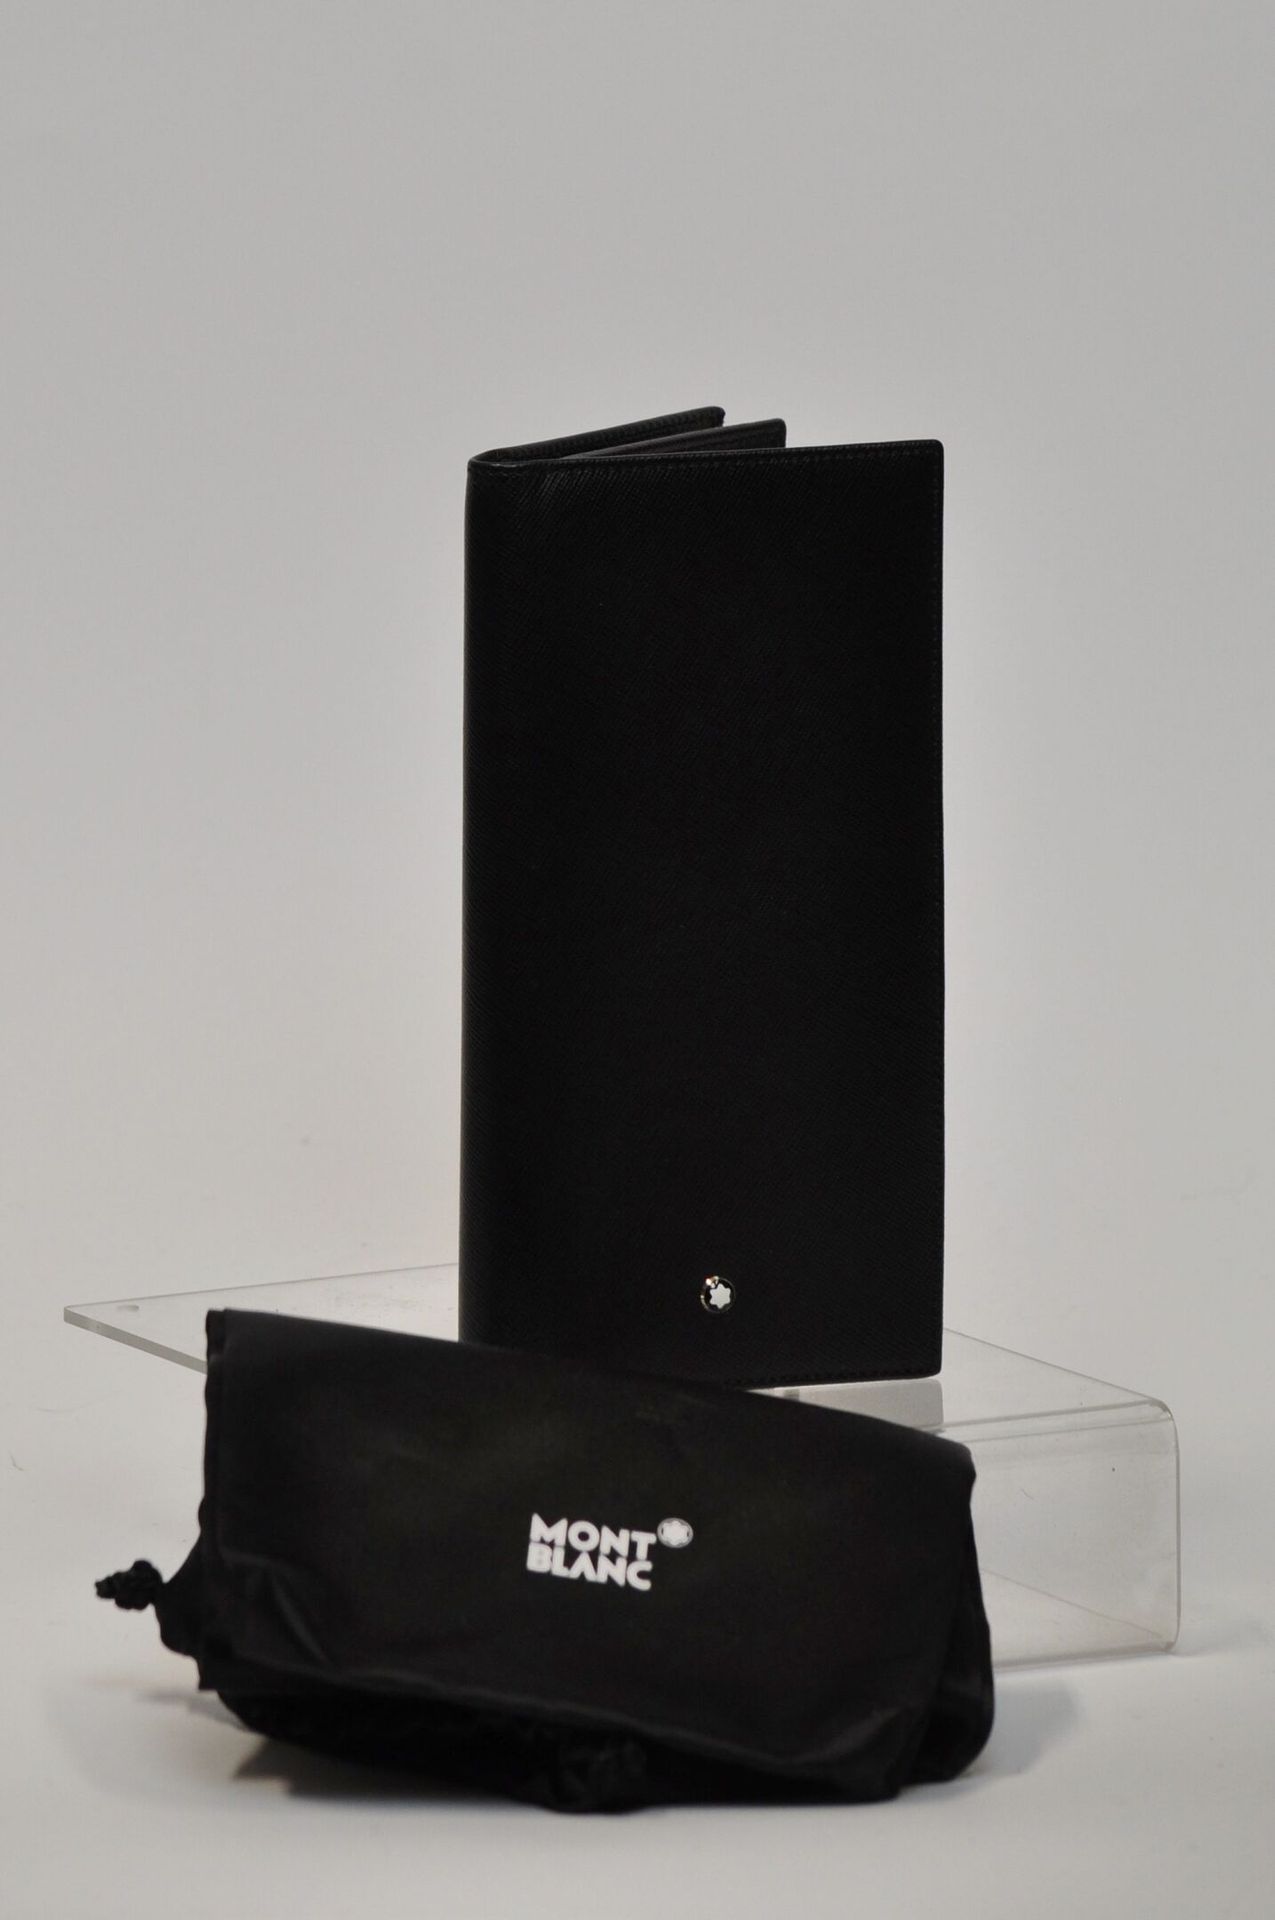 Null MONTBLANC

Grand porte carte en cuir grainé noir 

Dimensions : 8 x 11 cm 
&hellip;